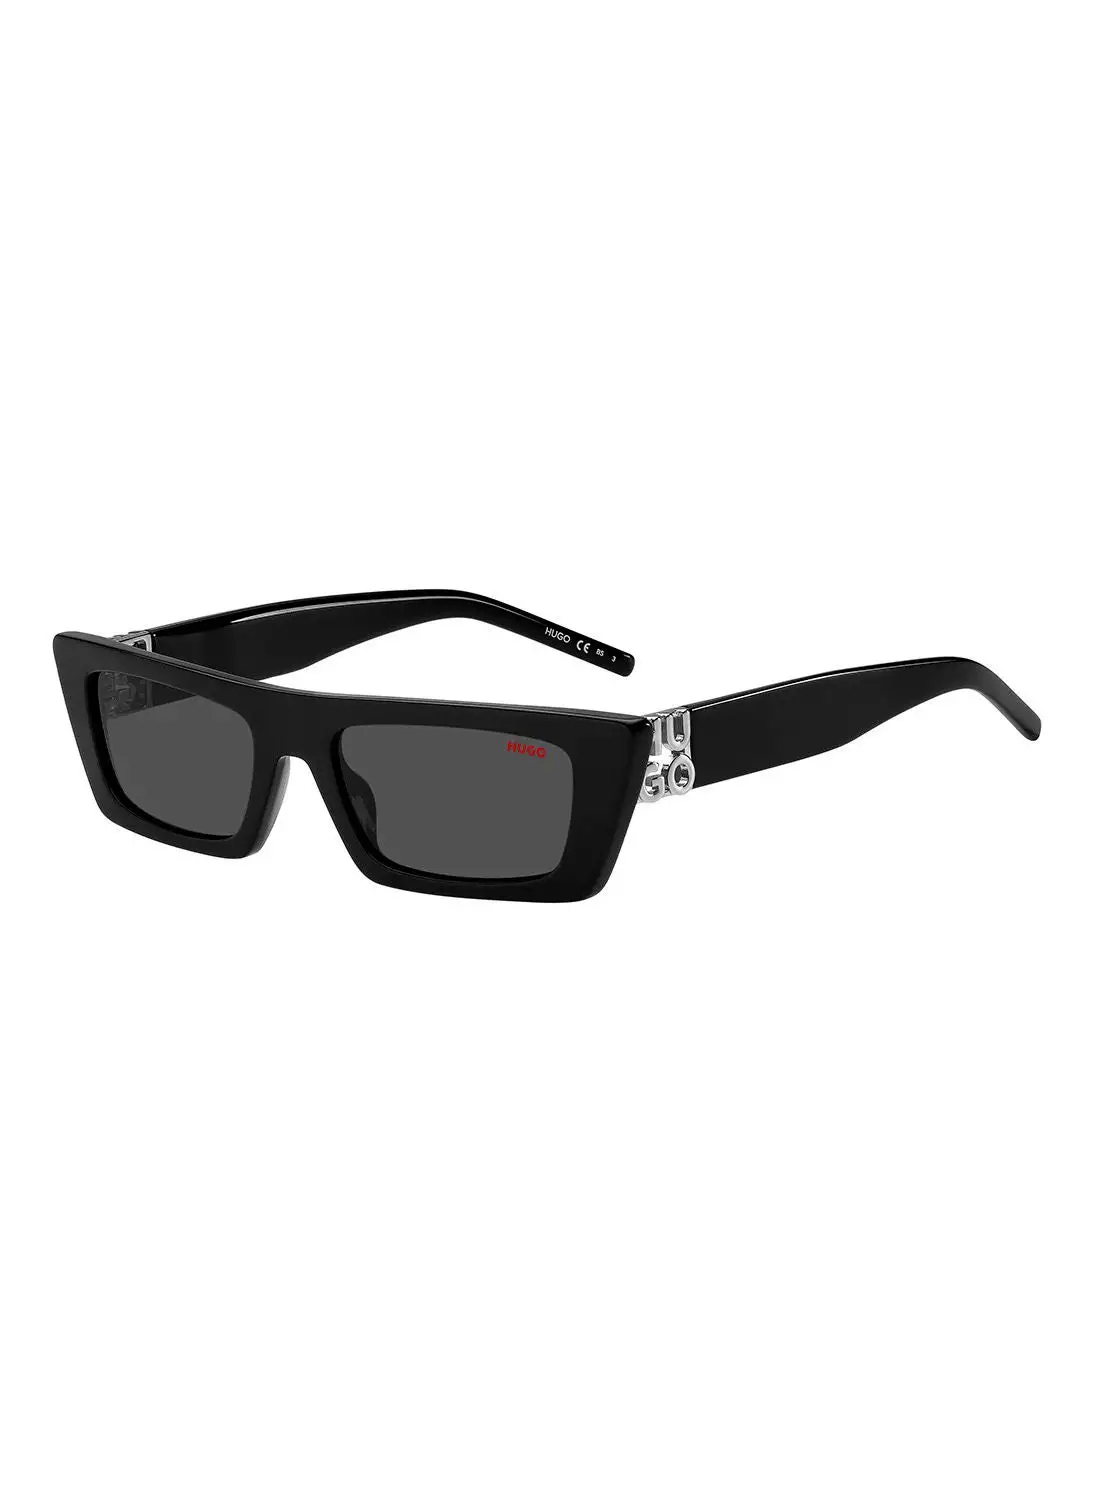 هوغو نظارة شمسية للنساء للحماية من الأشعة فوق البنفسجية - Hg 1256/S Black 52 - مقاس العدسة: 52 ملم